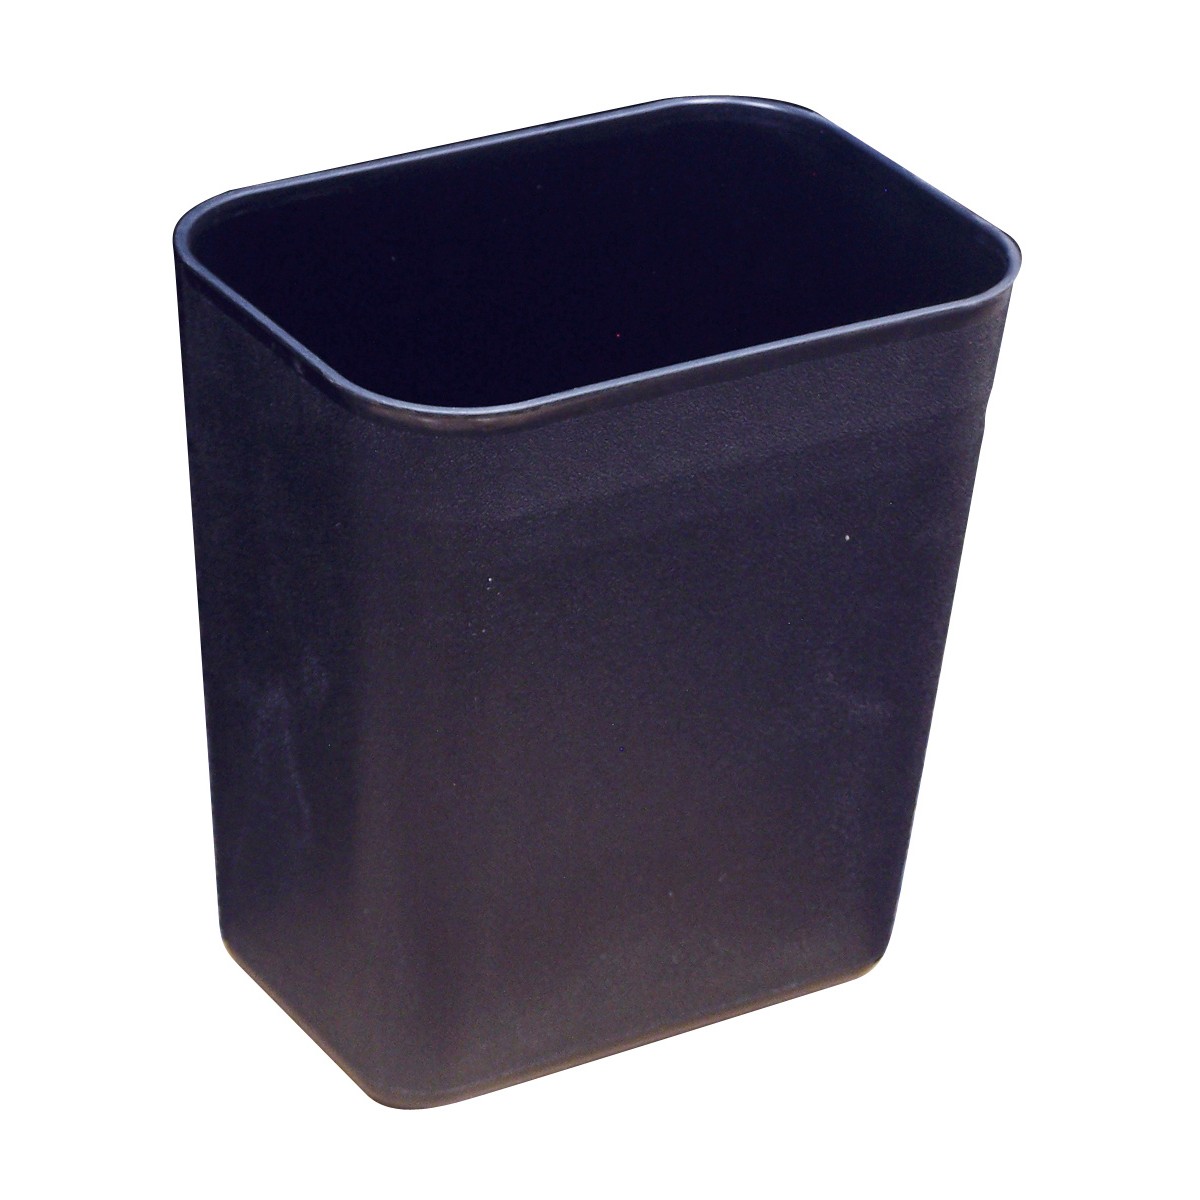 X Small Wastebasket Black 1 Gal 378 L 